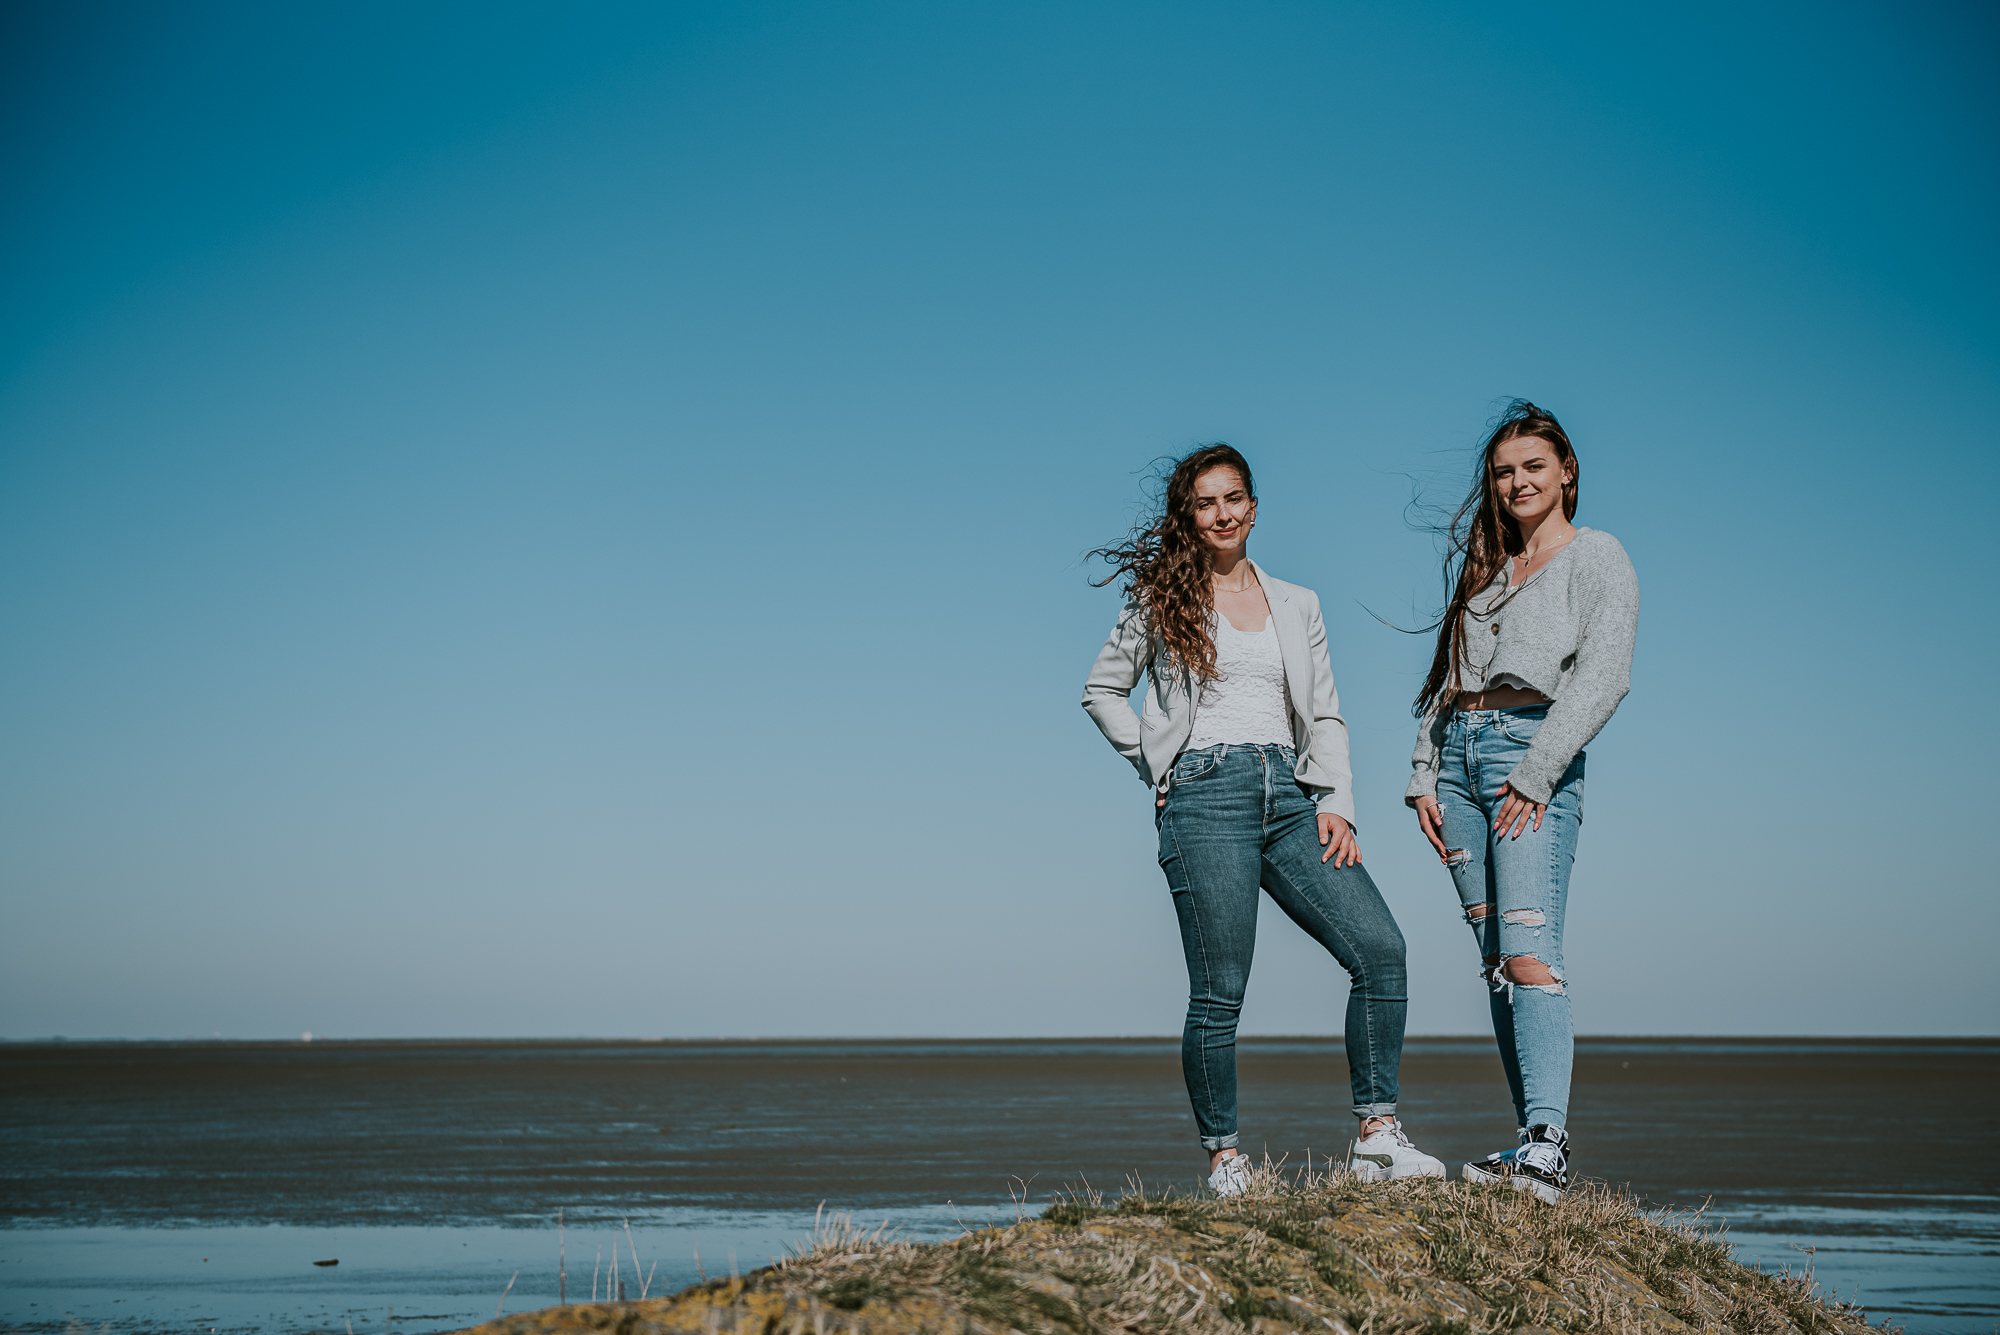 Fotoshoot bij de Waddenzee, Peasens-Moddergat, door fotograaf NIckie Fotografie uit Friesland. Portret van twee zussen bij de Waddenzee door portretfotograaf Nickie Fotografie.